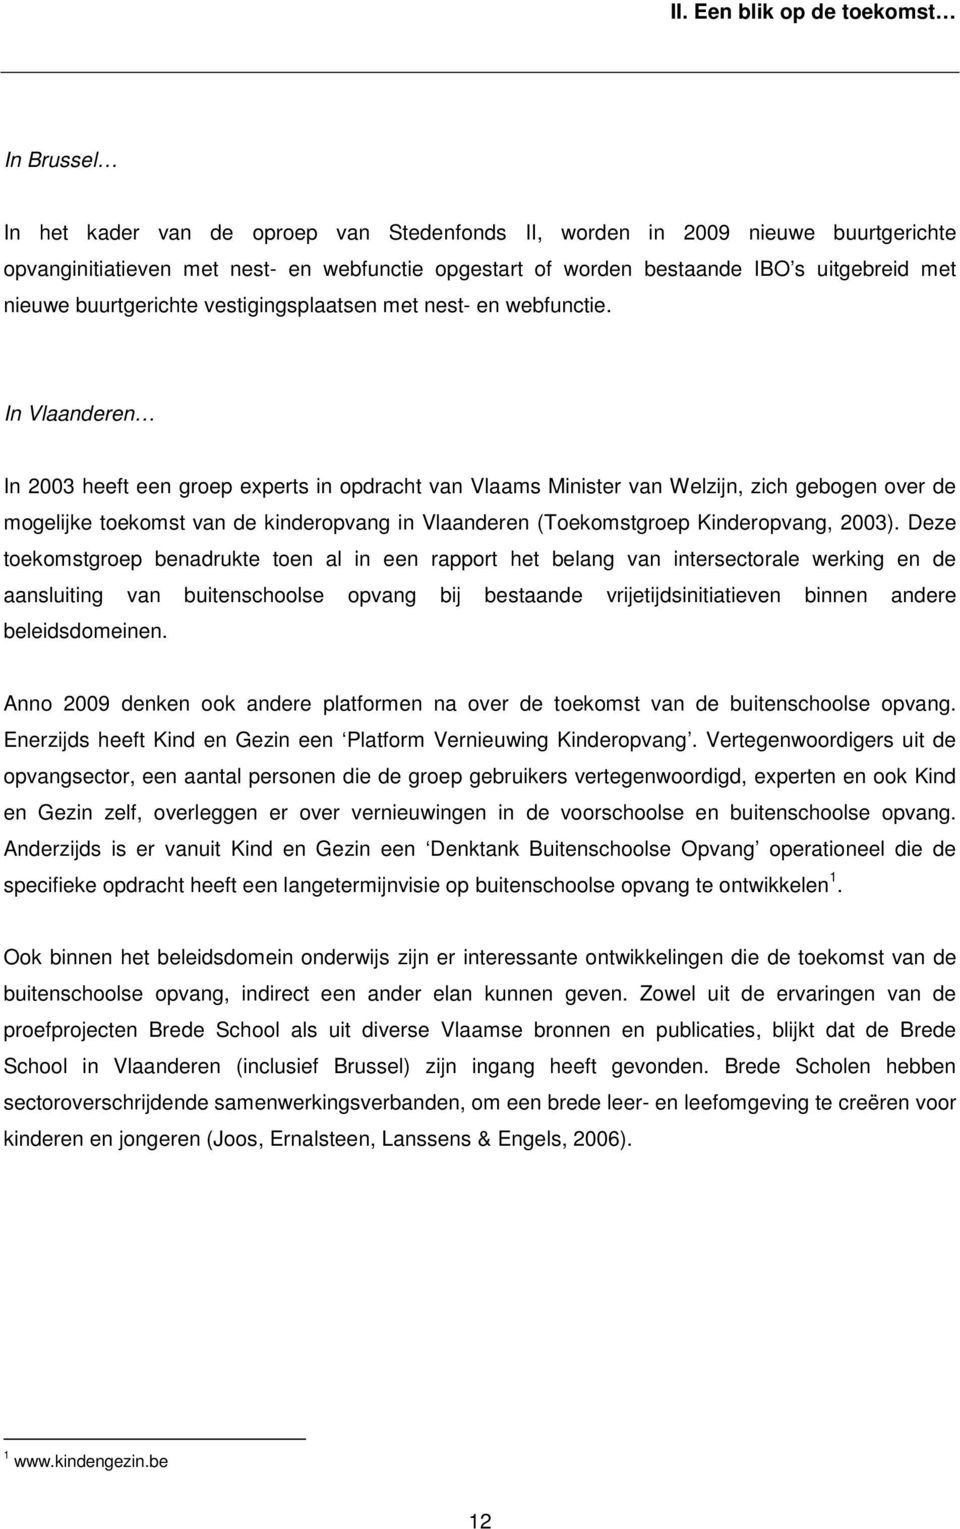 In Vlaanderen In 2003 heeft een groep experts in opdracht van Vlaams Minister van Welzijn, zich gebogen over de mogelijke toekomst van de kinderopvang in Vlaanderen (Toekomstgroep Kinderopvang, 2003).